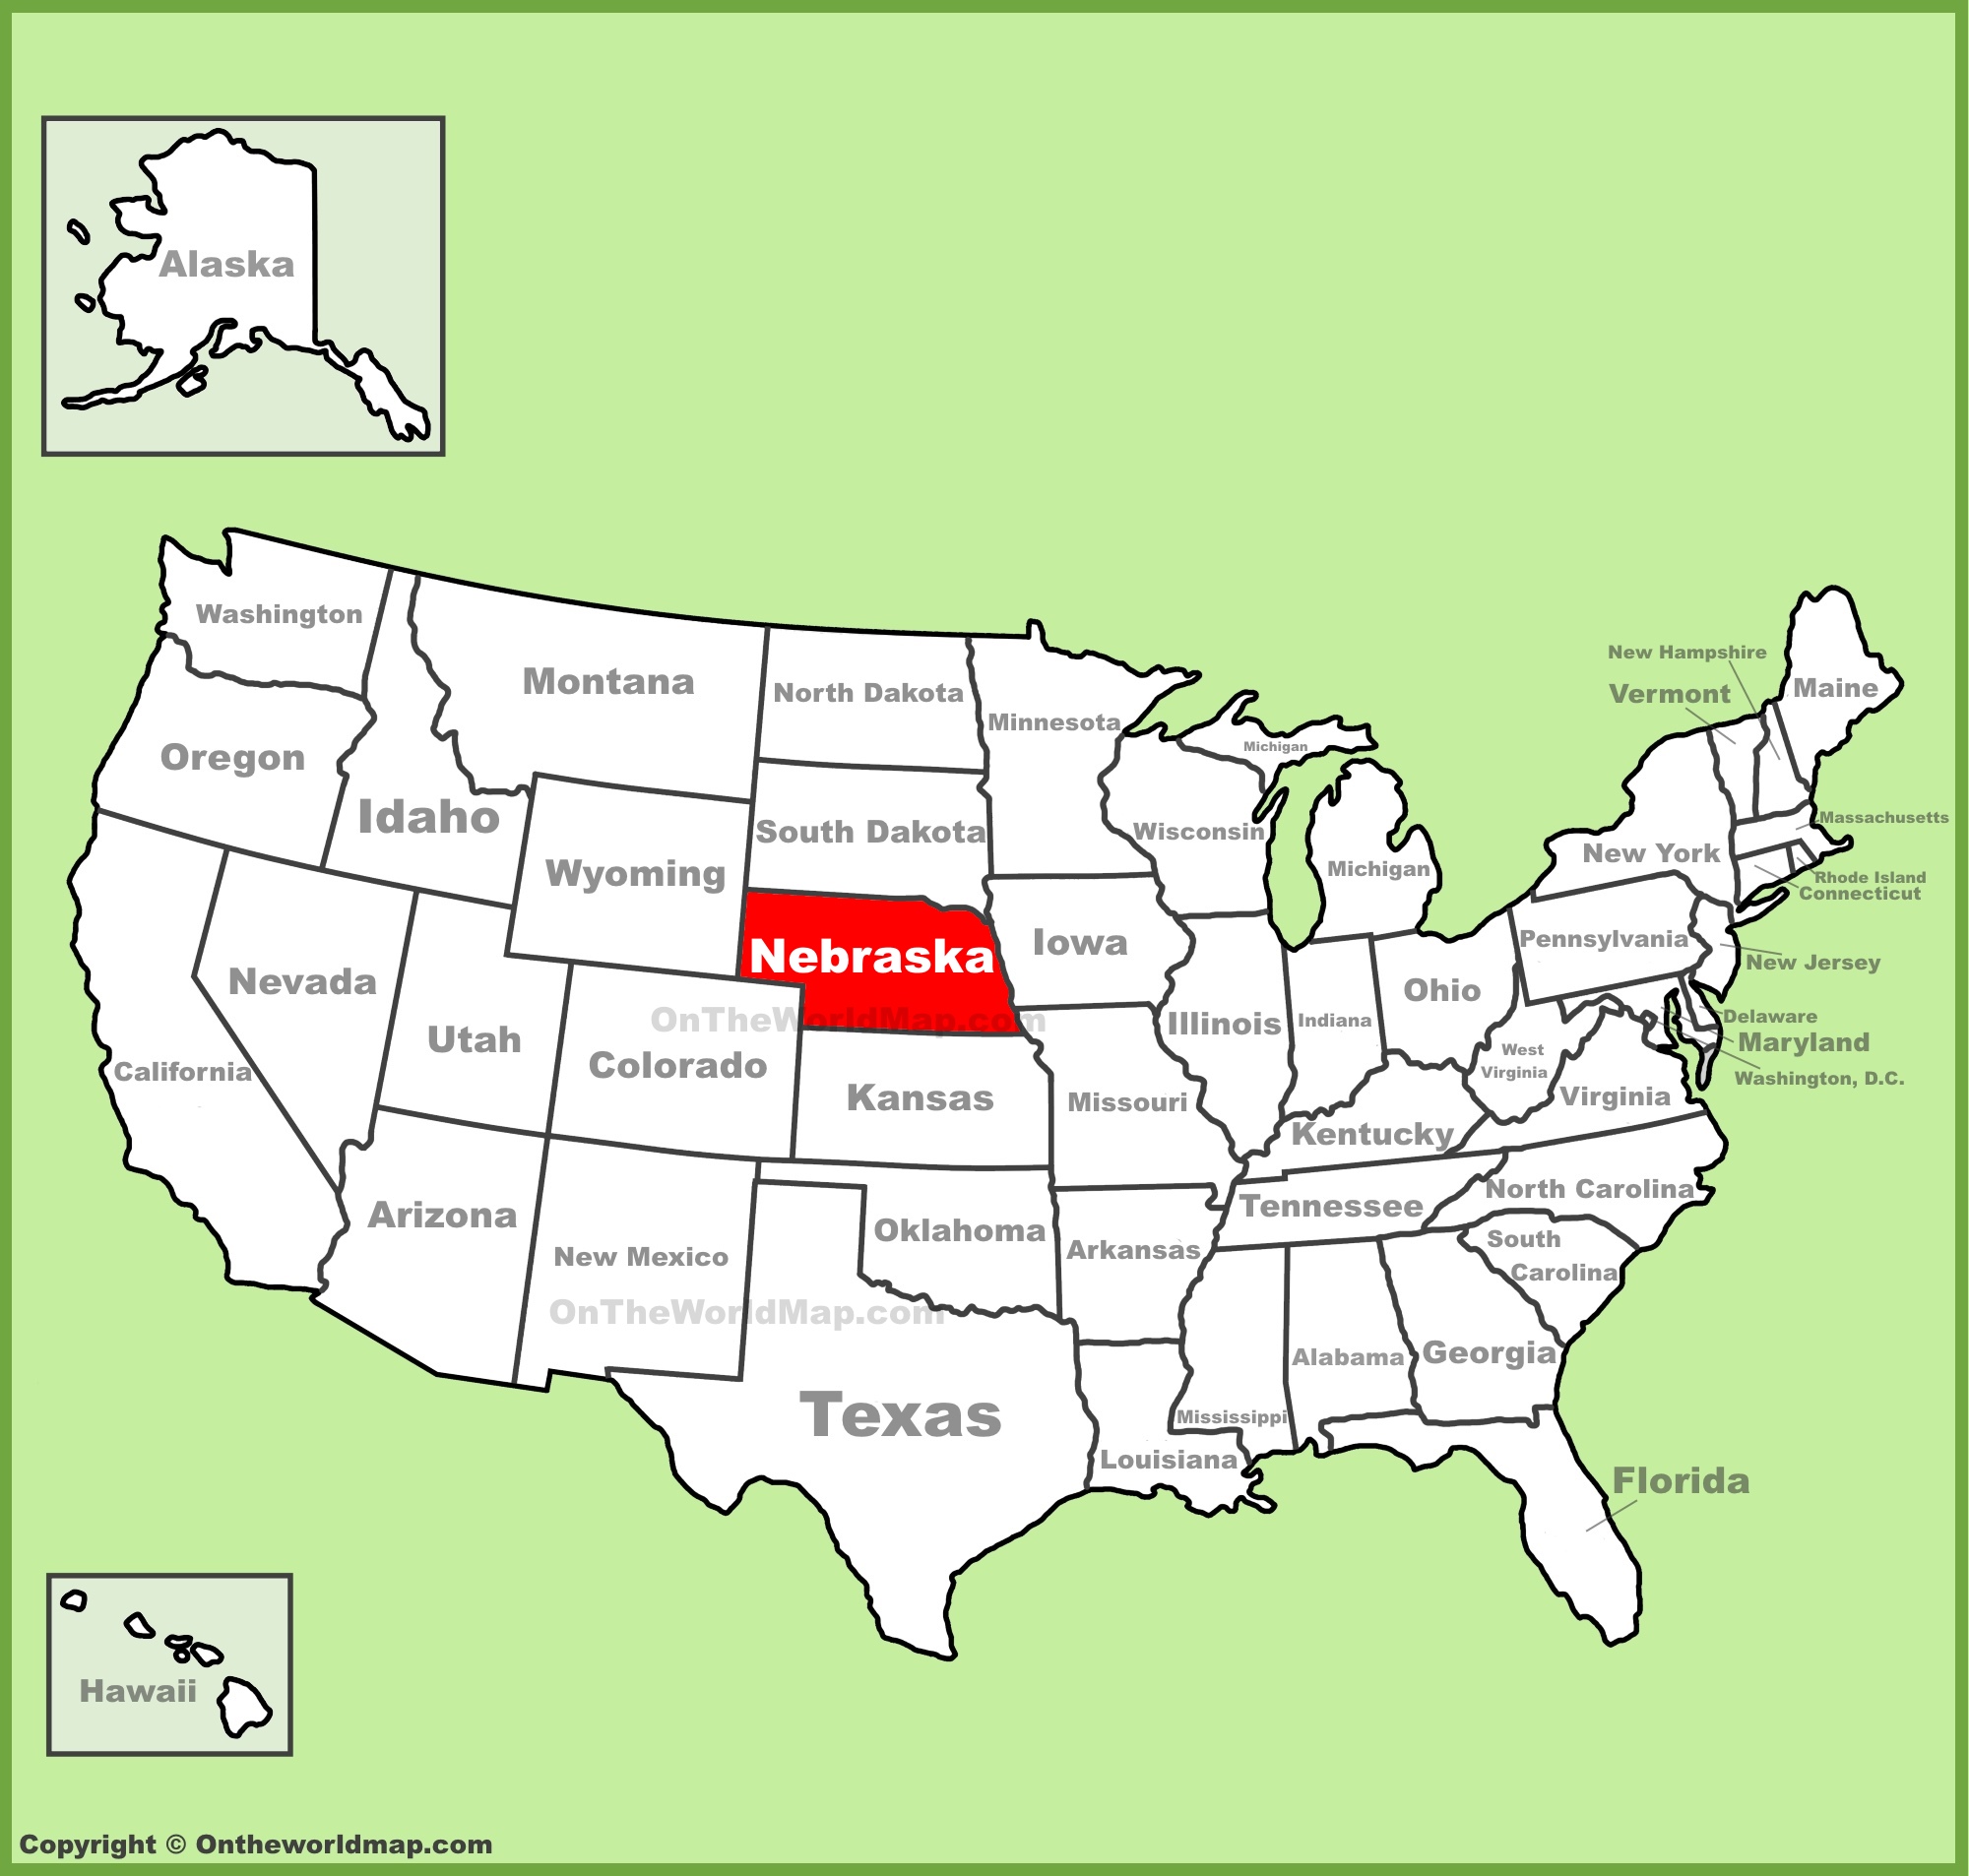 nebraska-location-on-the-us-map.jpg